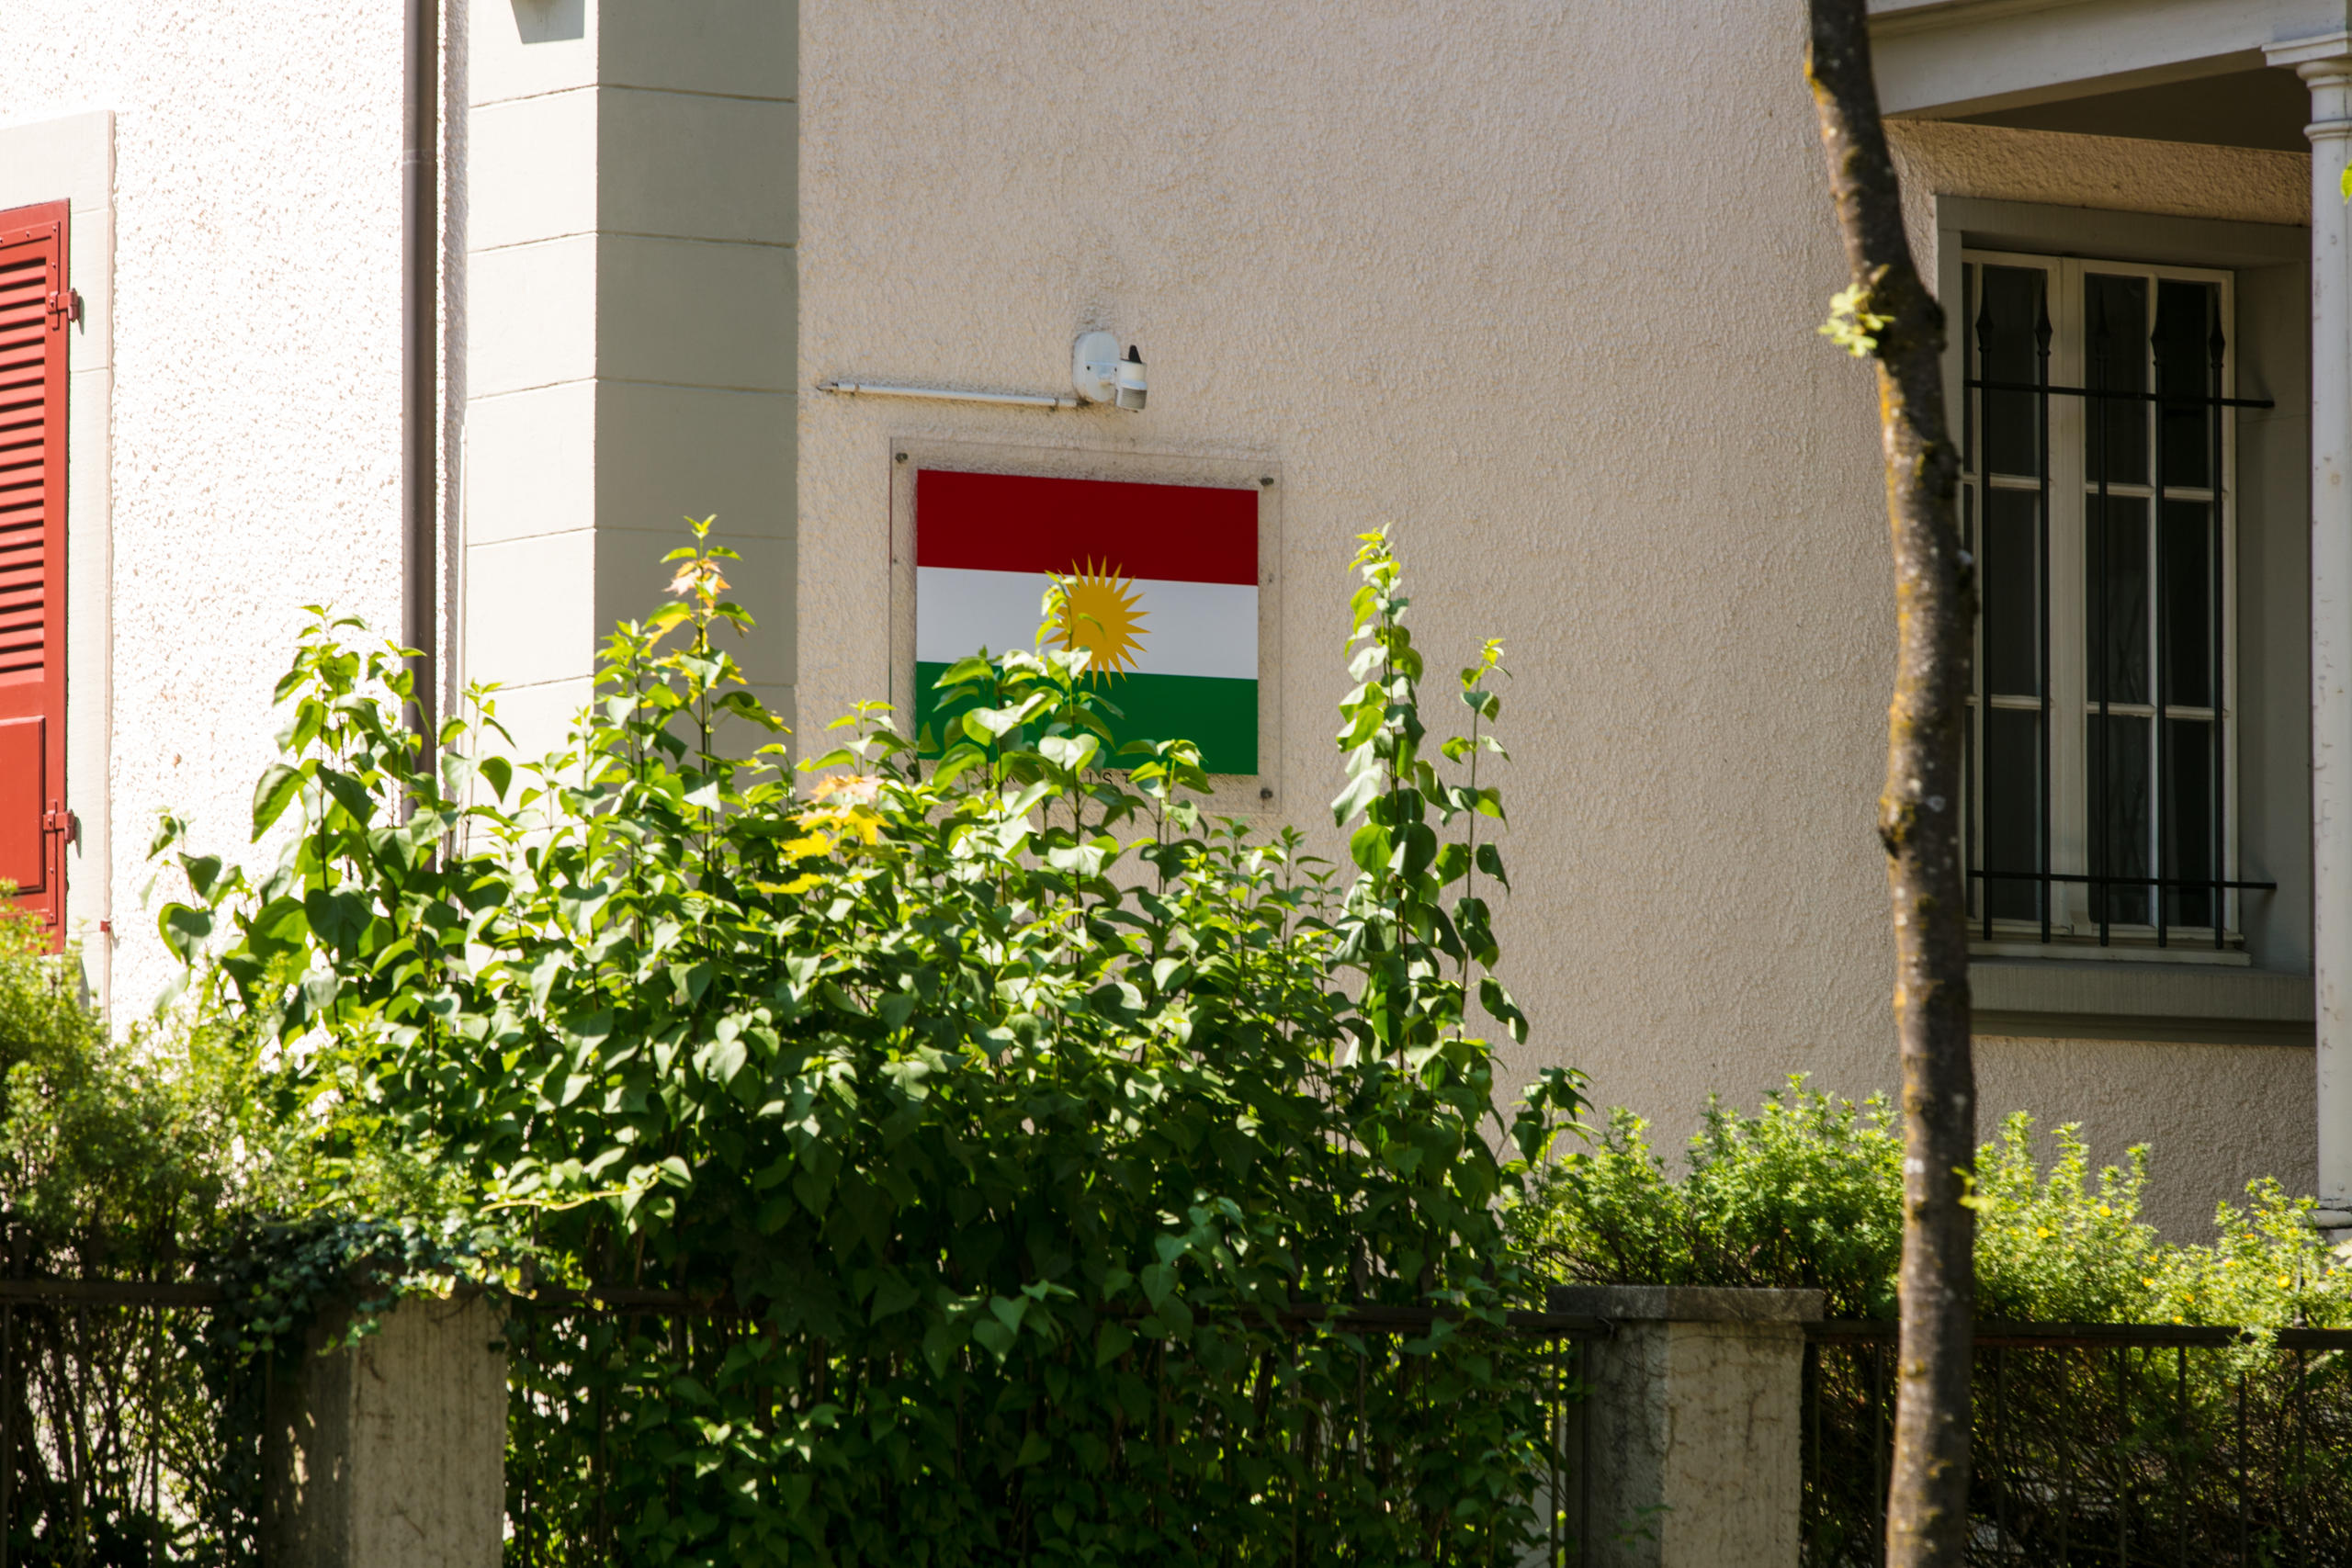 La bandera en rojo-blanco-verde con el sol en el centro colgada en una pared